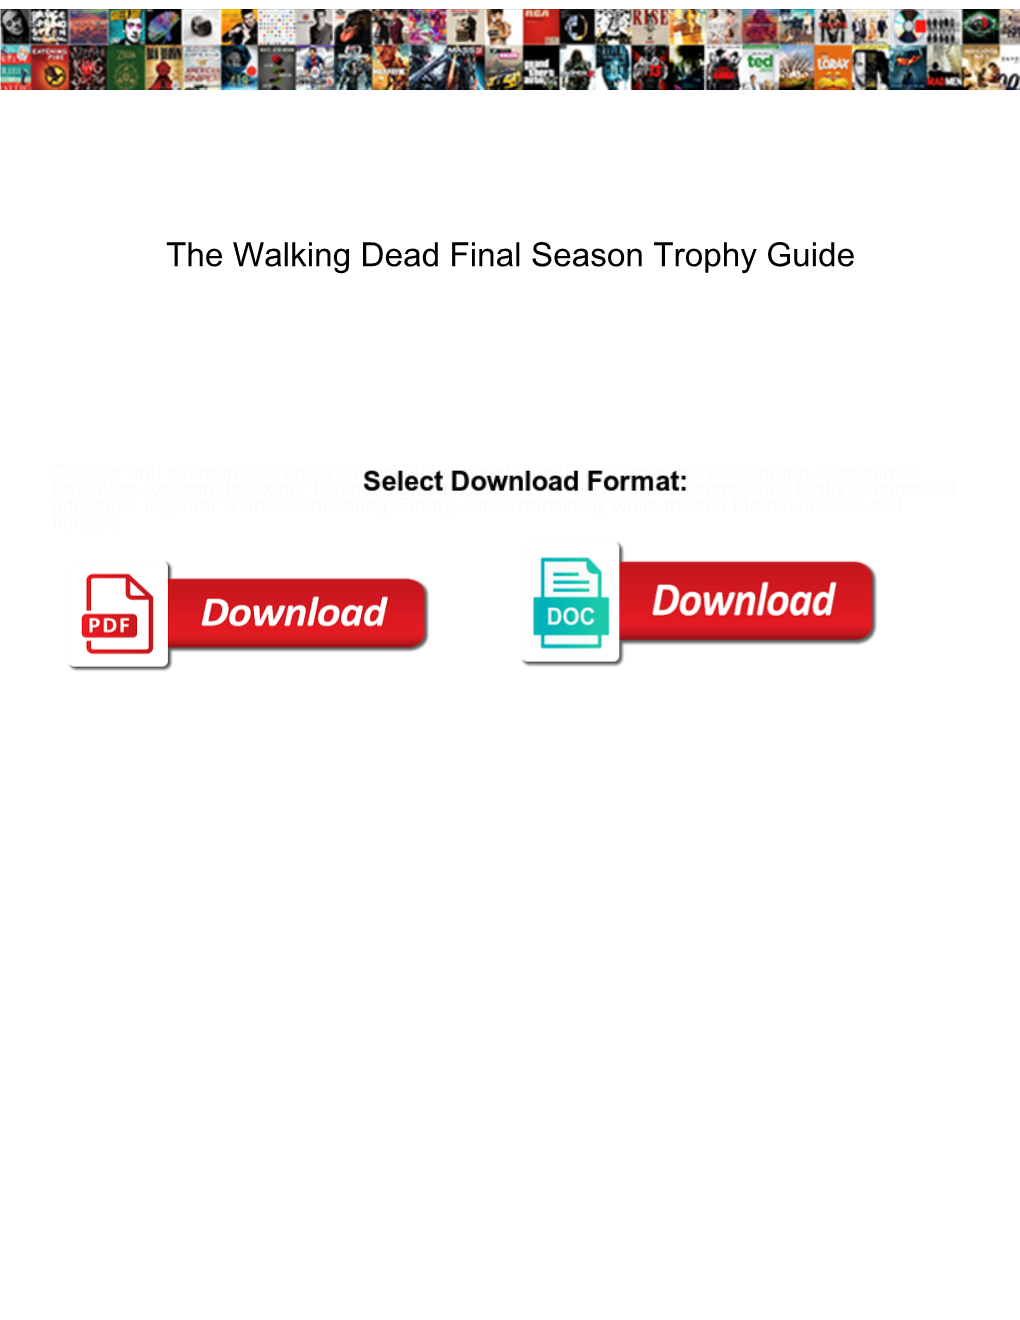 the-walking-dead-final-season-trophy-guide-docslib